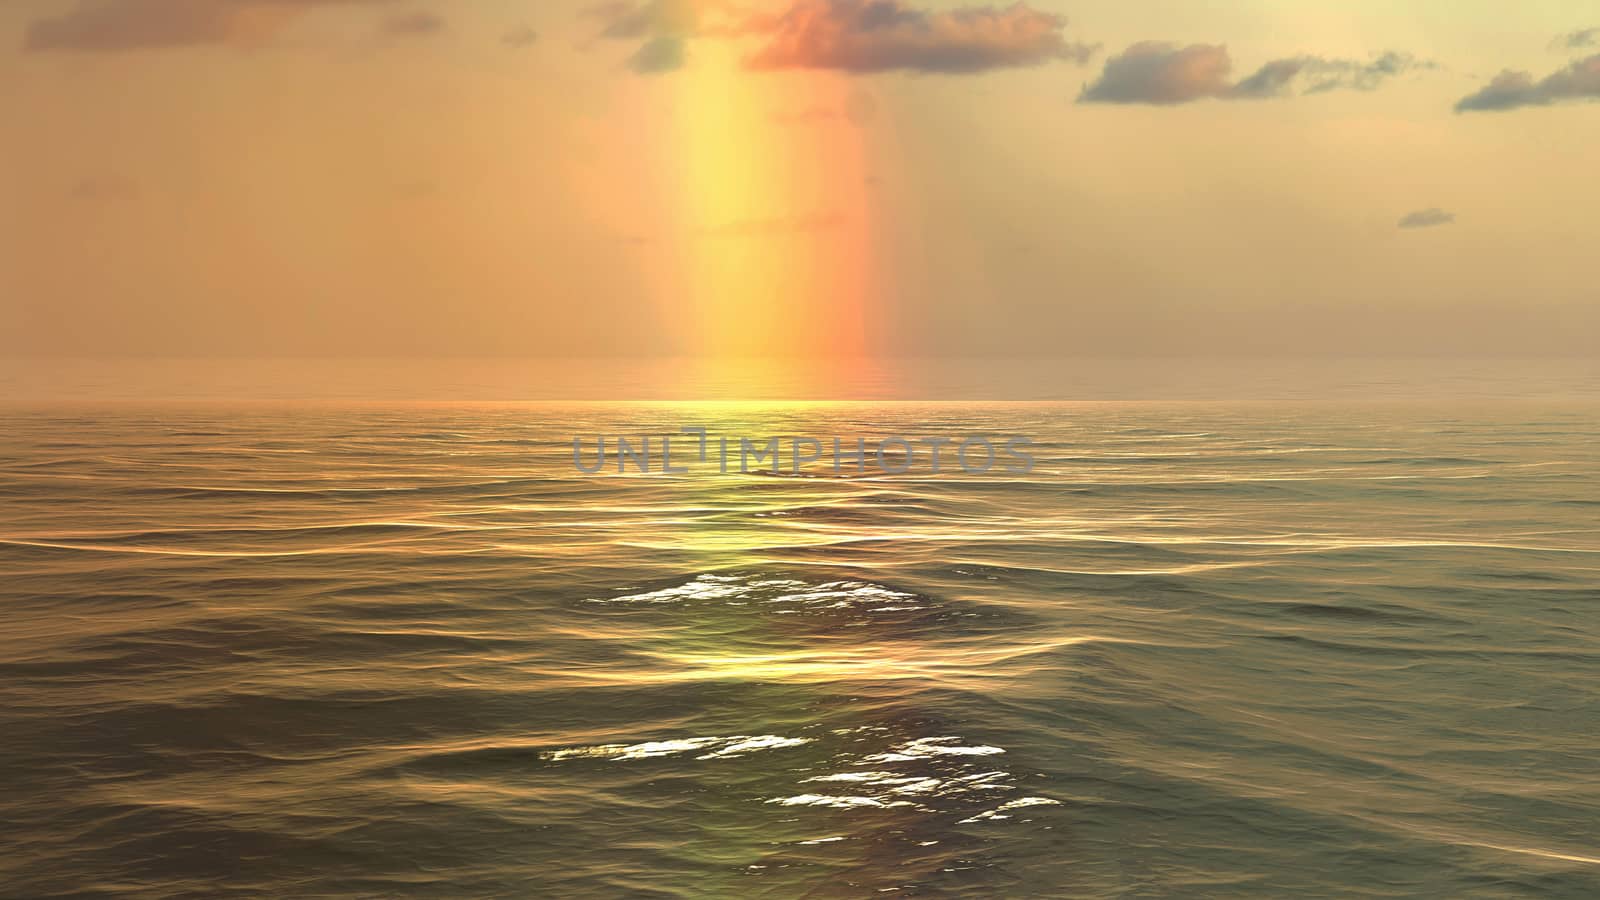 Rainbow over the sea by Fr@nk